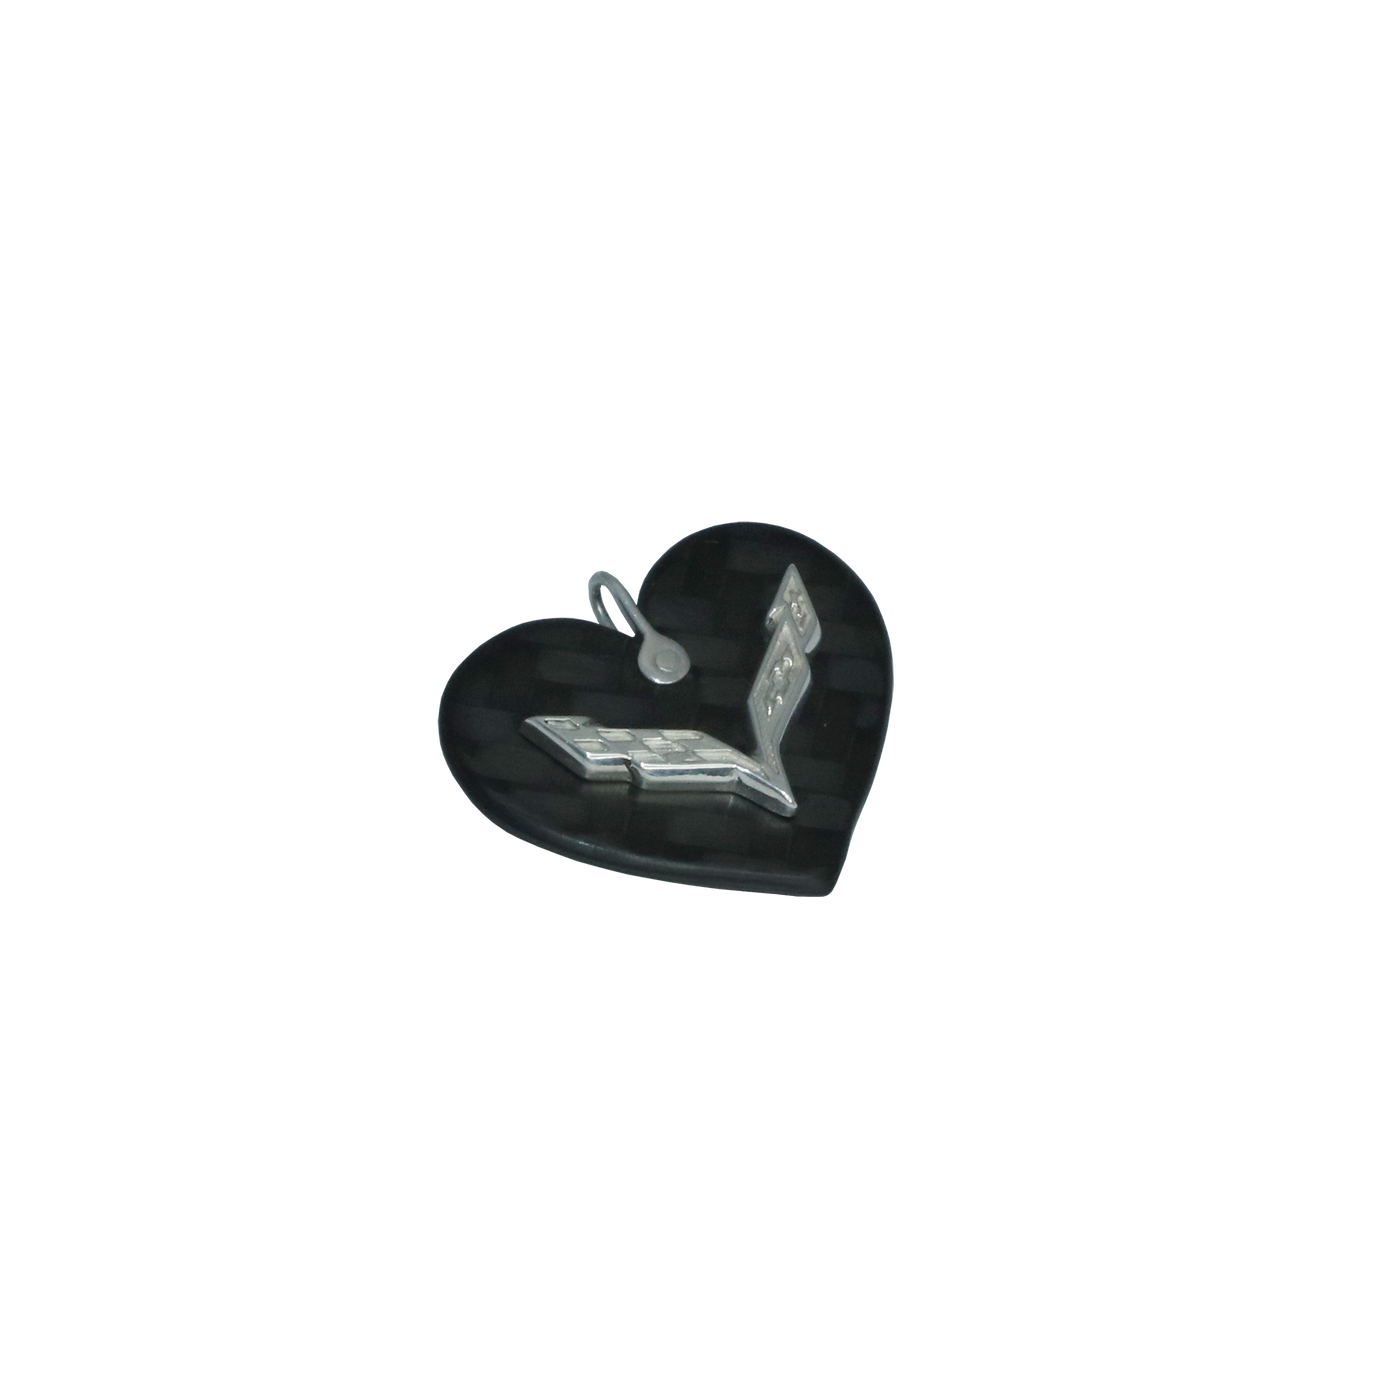 C7 Corvette Carbon Fiber Heart Pendant